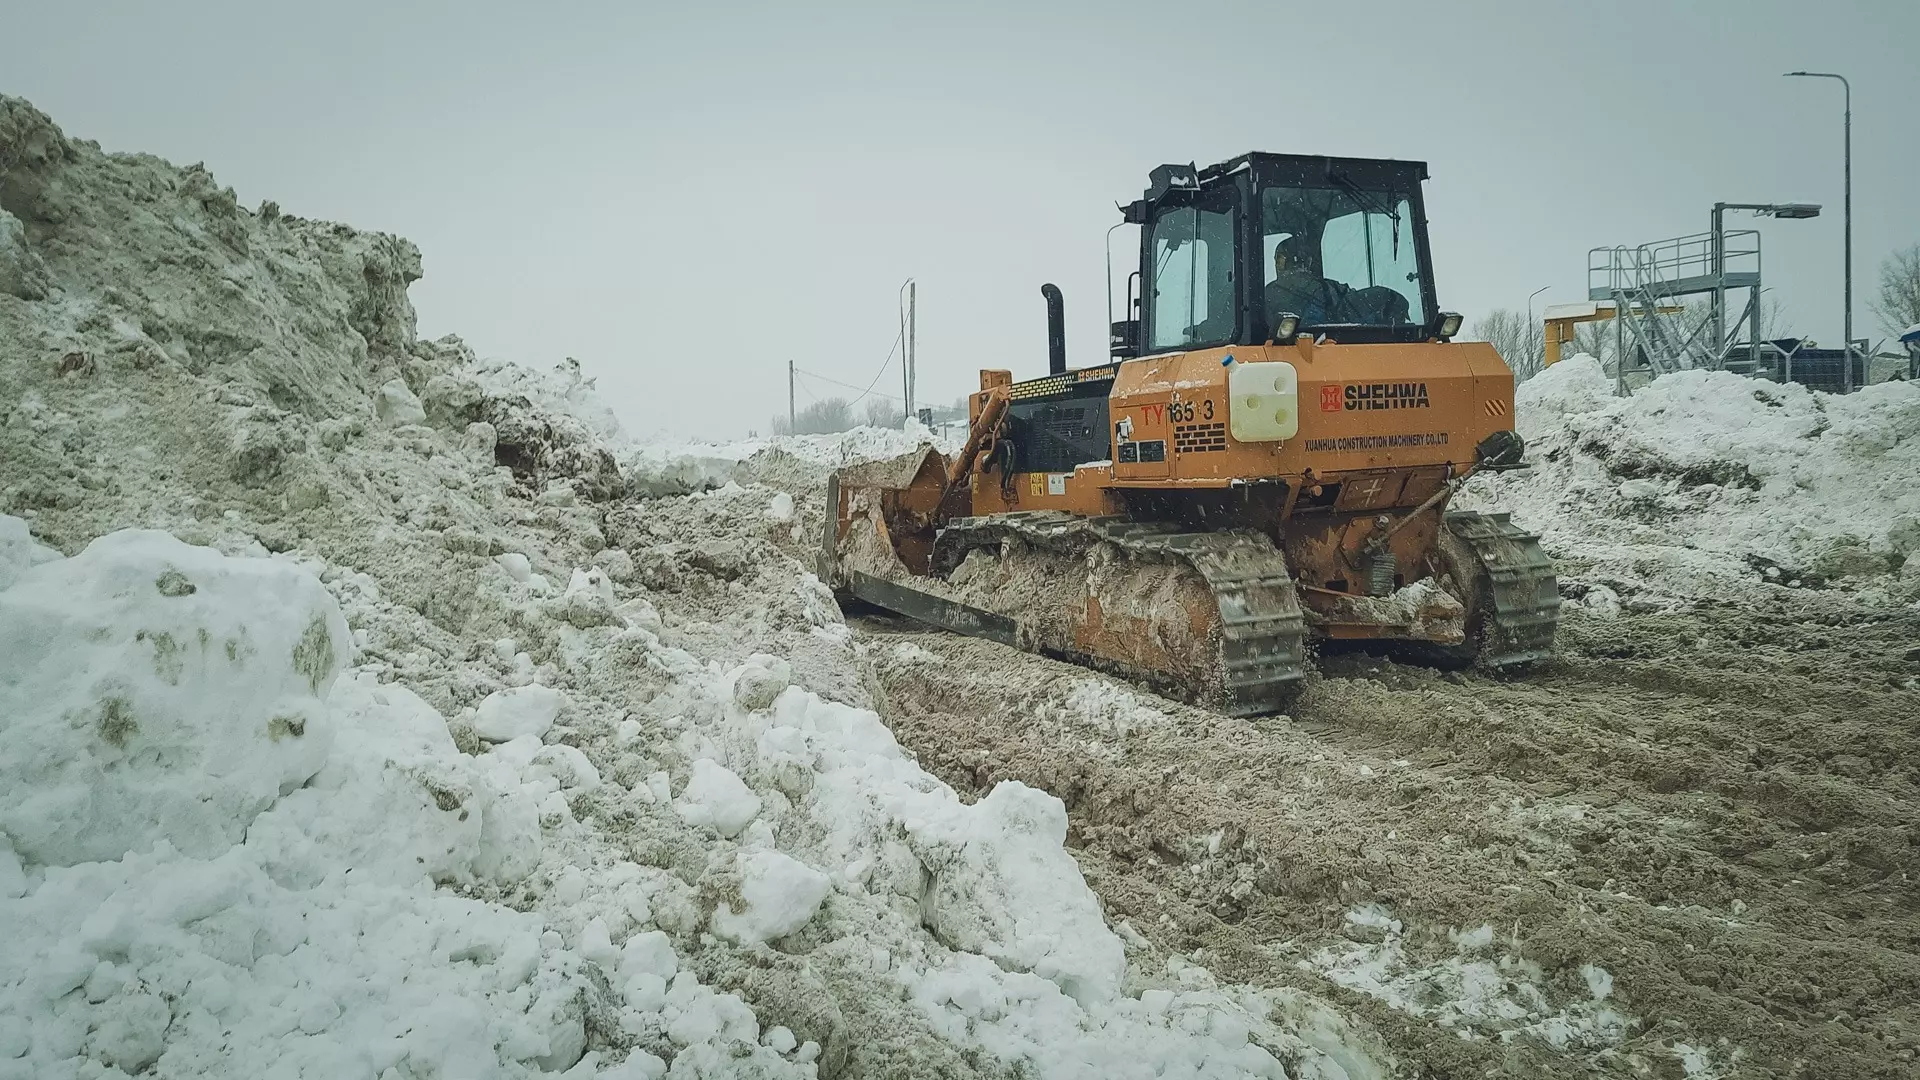 Проявите терпение: на трассы Тюменской области вышла снегоуборочная техника